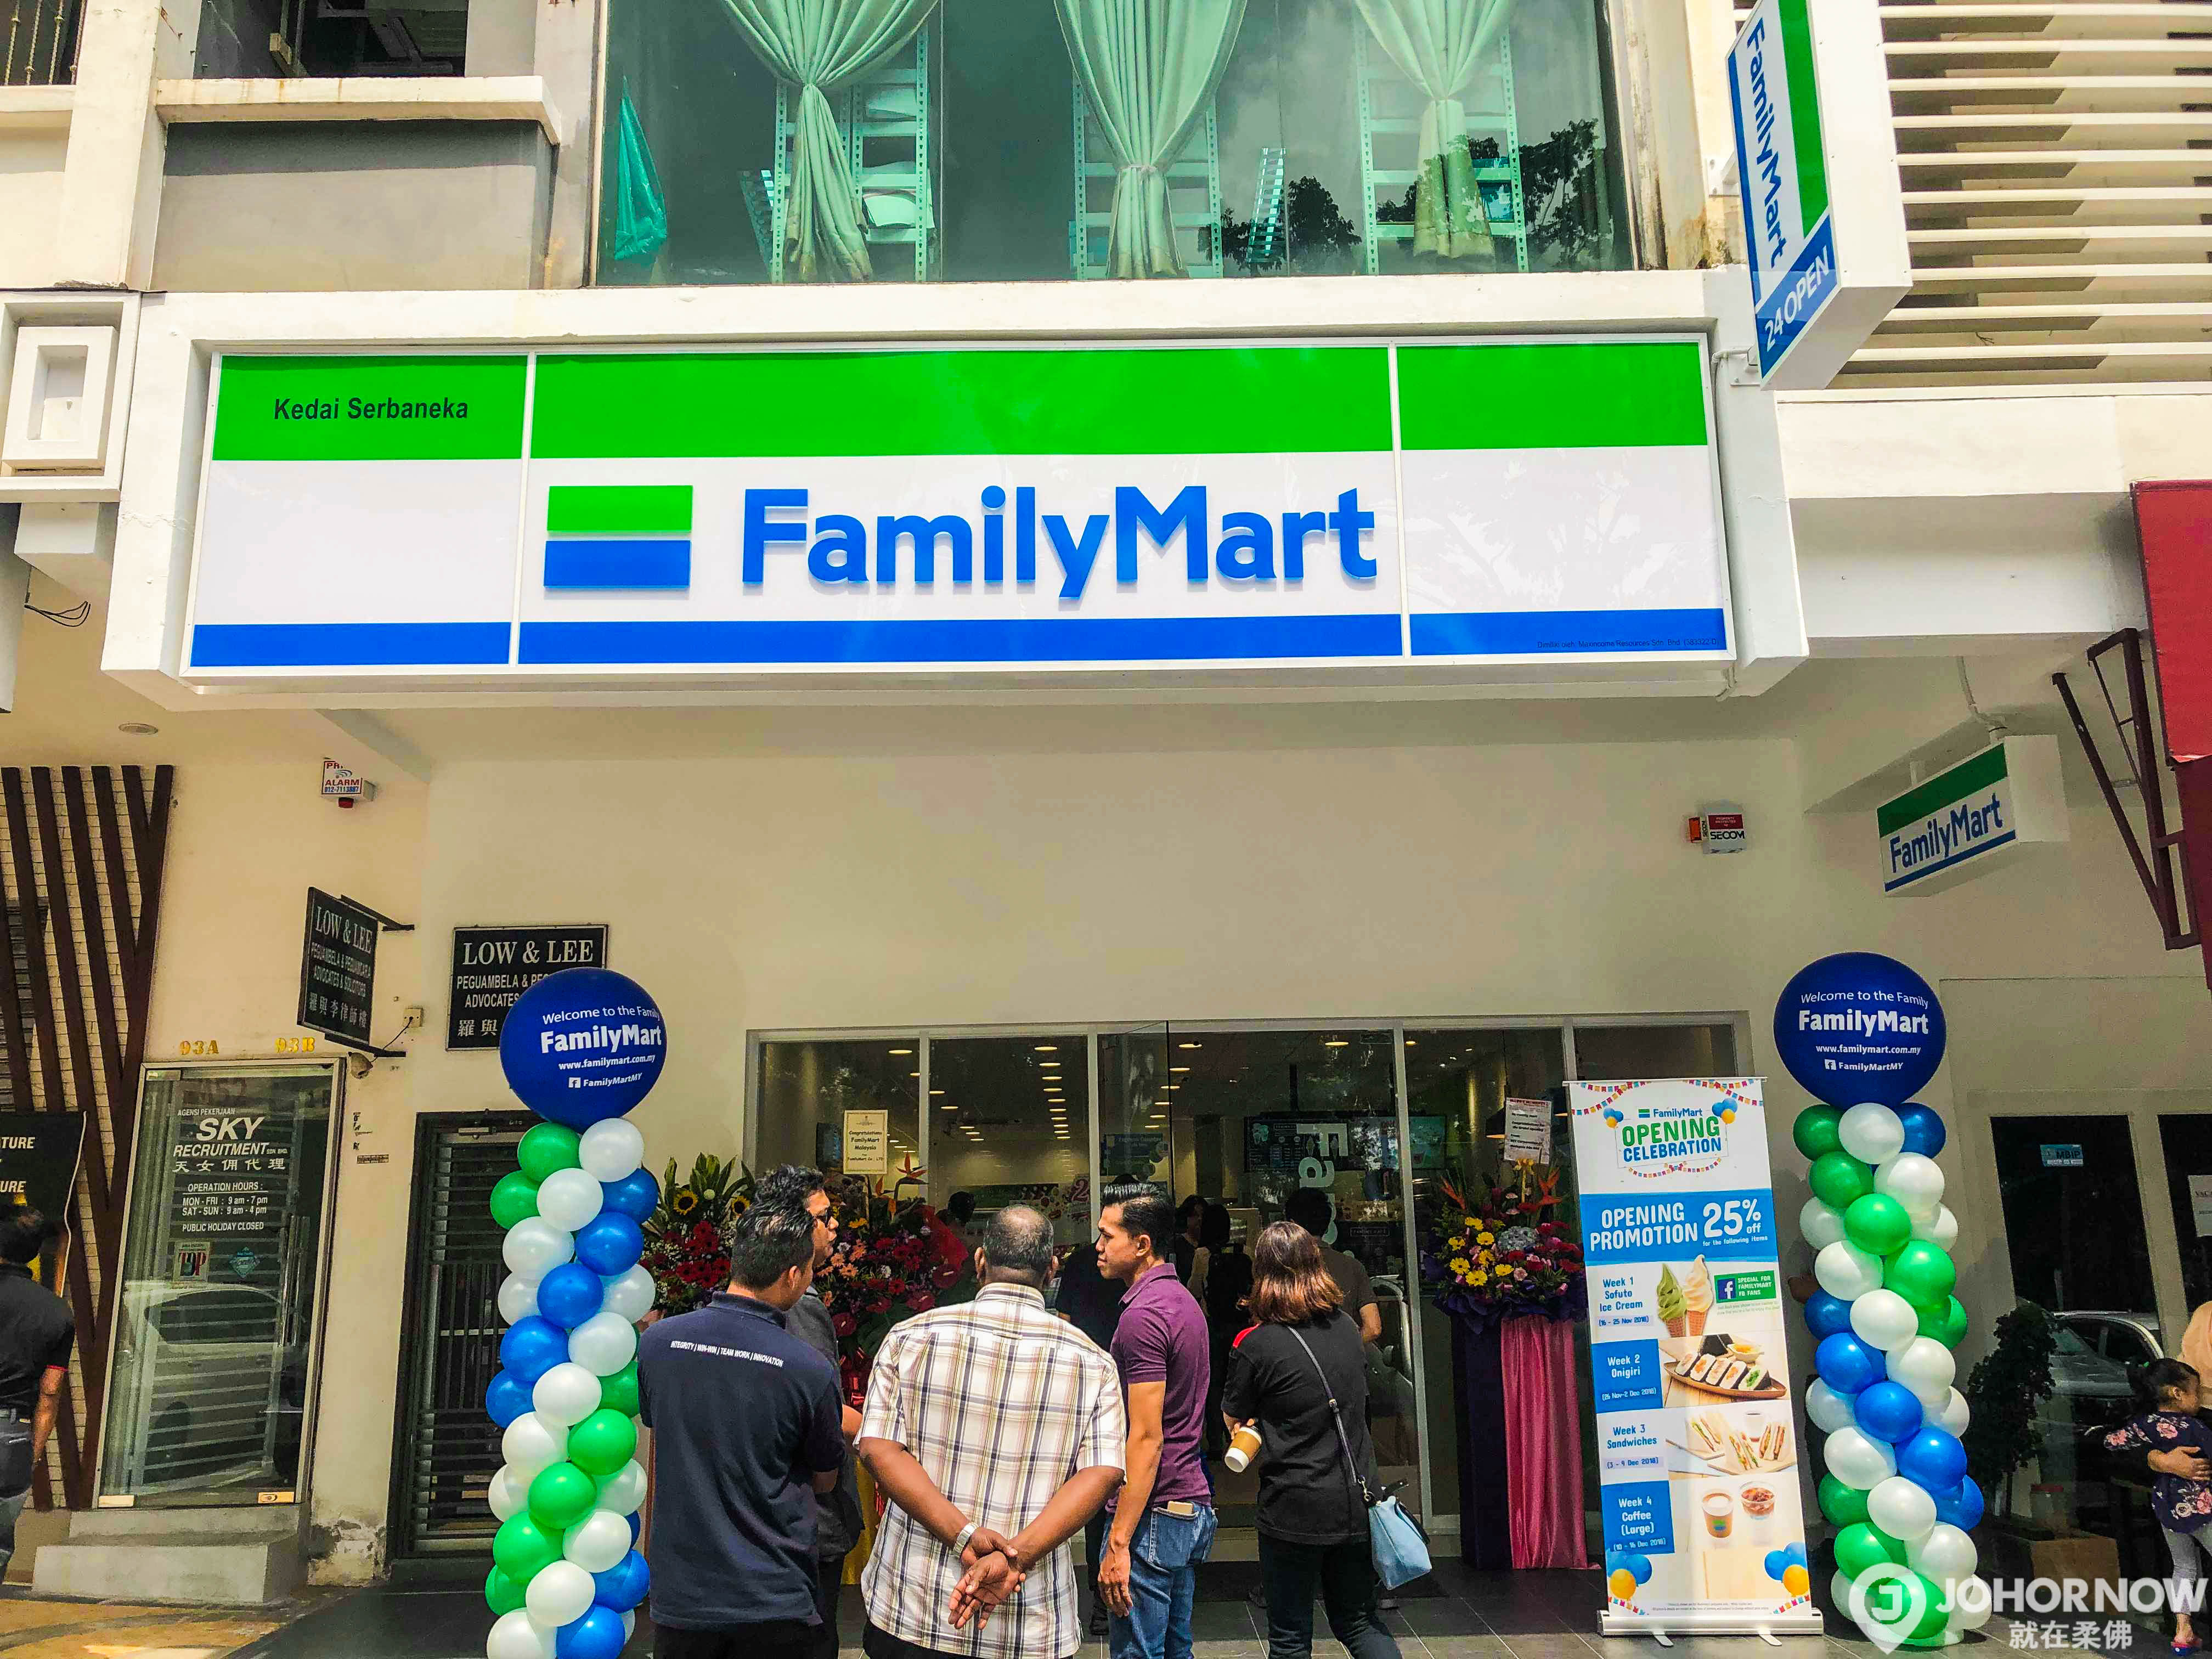 【盘点新山市Family Mart分店】全球第二大连锁便利商店Family Mart预计于5年内在大马开设300家分店！ - JOHORNOW